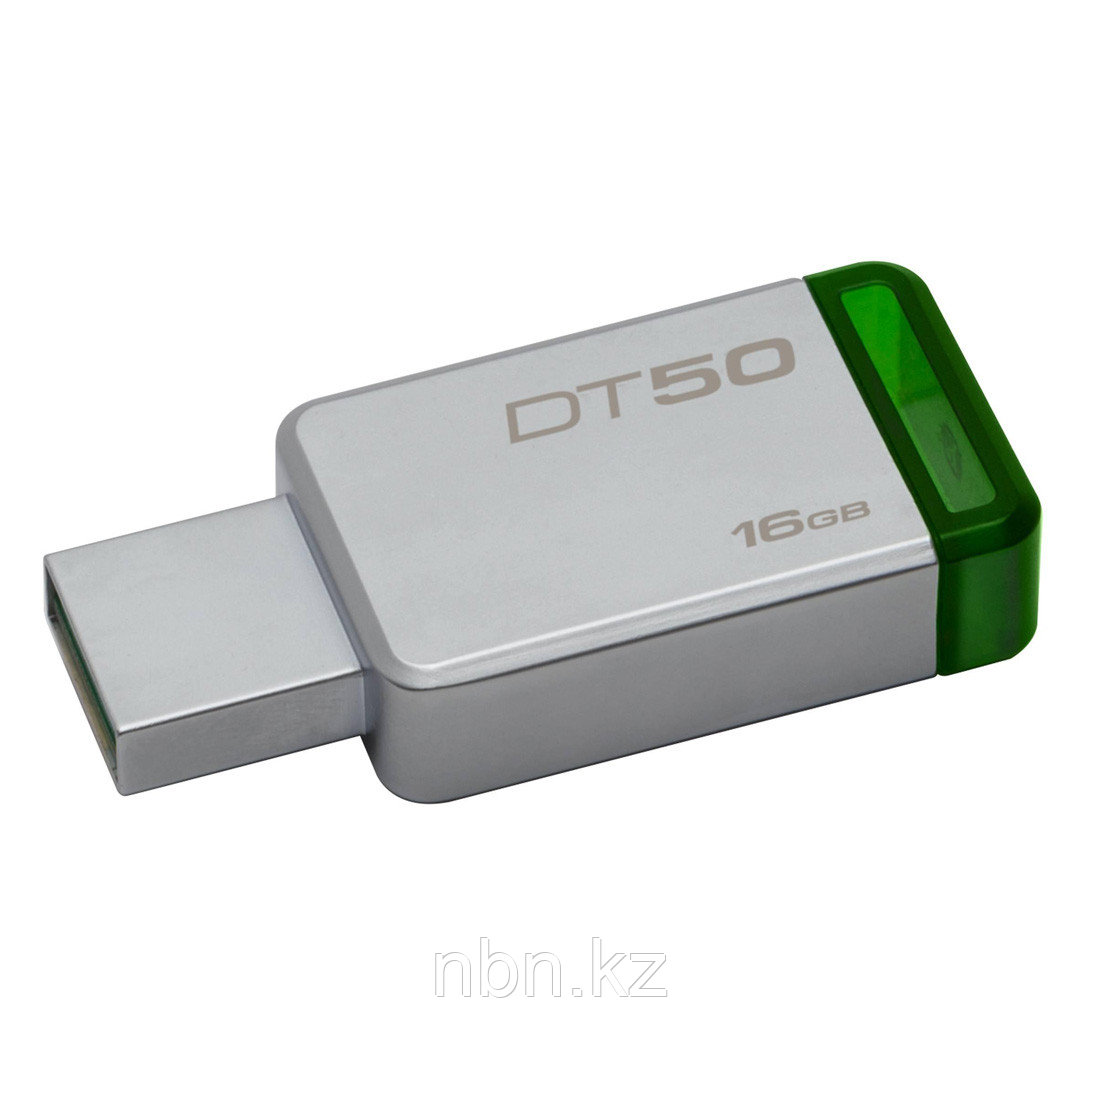 USB-накопитель Kingston DataTraveler® 50  (DT50) 16GB, фото 1